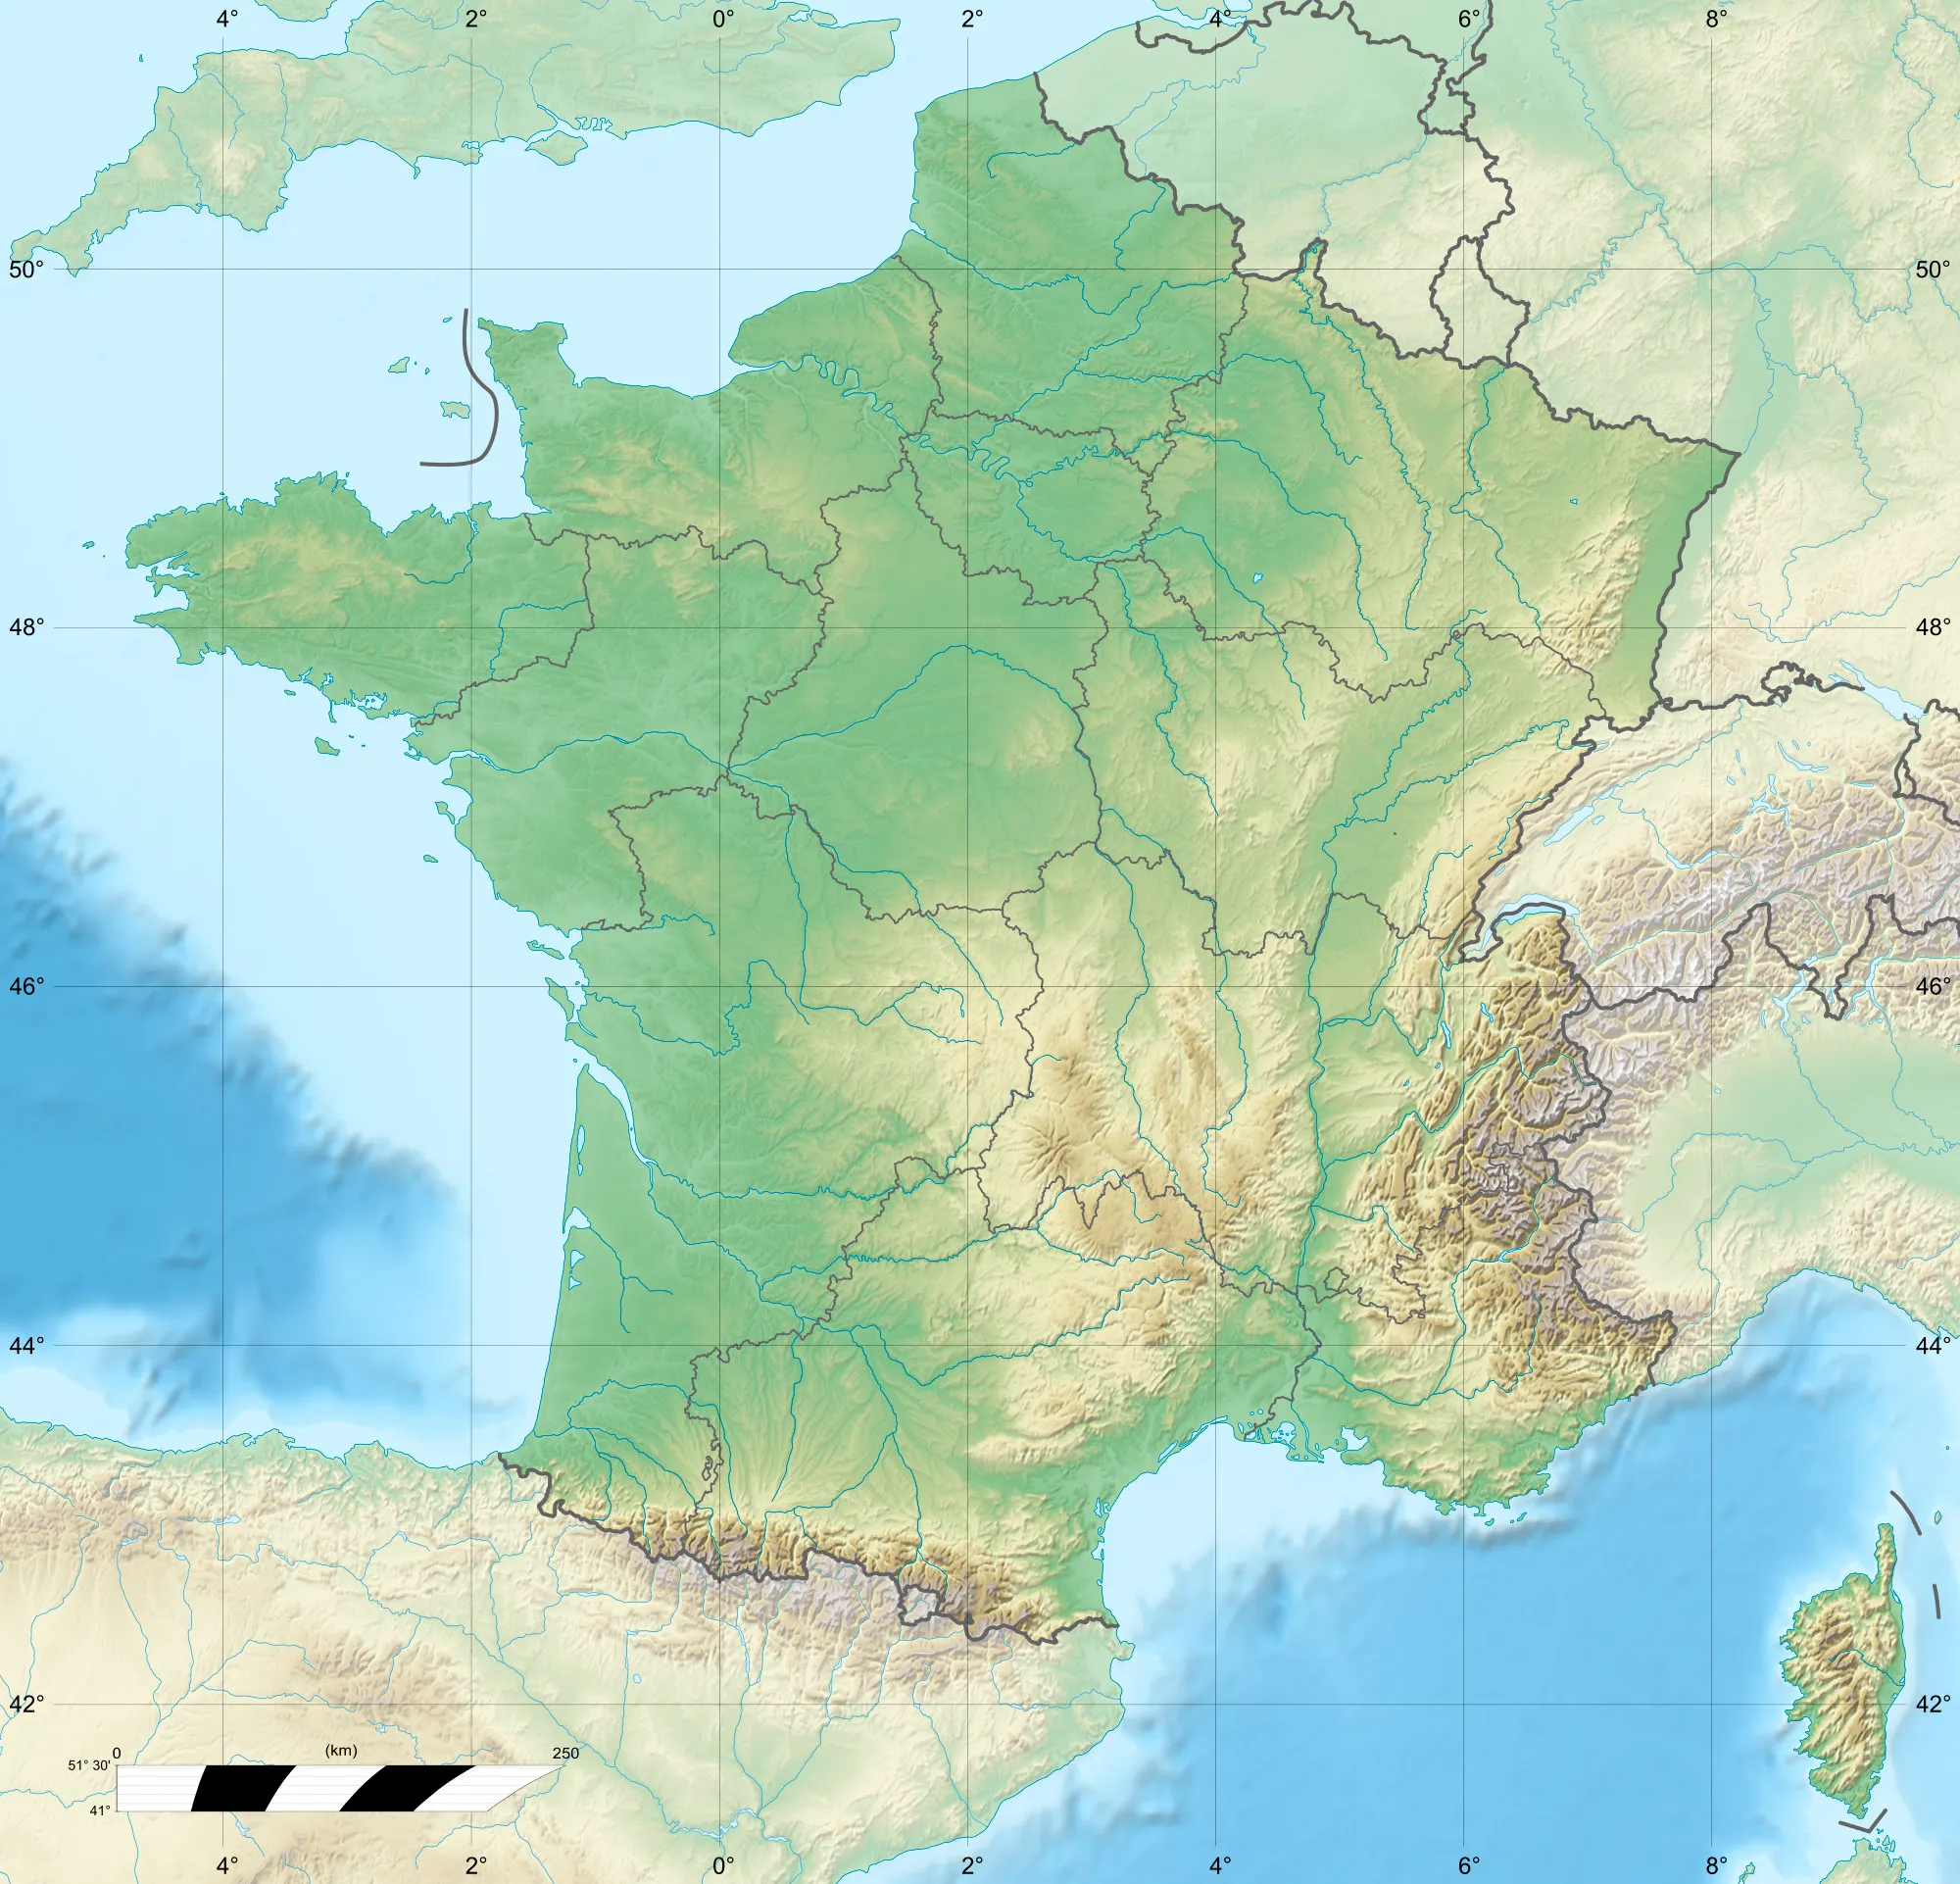 Image of Solliès-Toucas